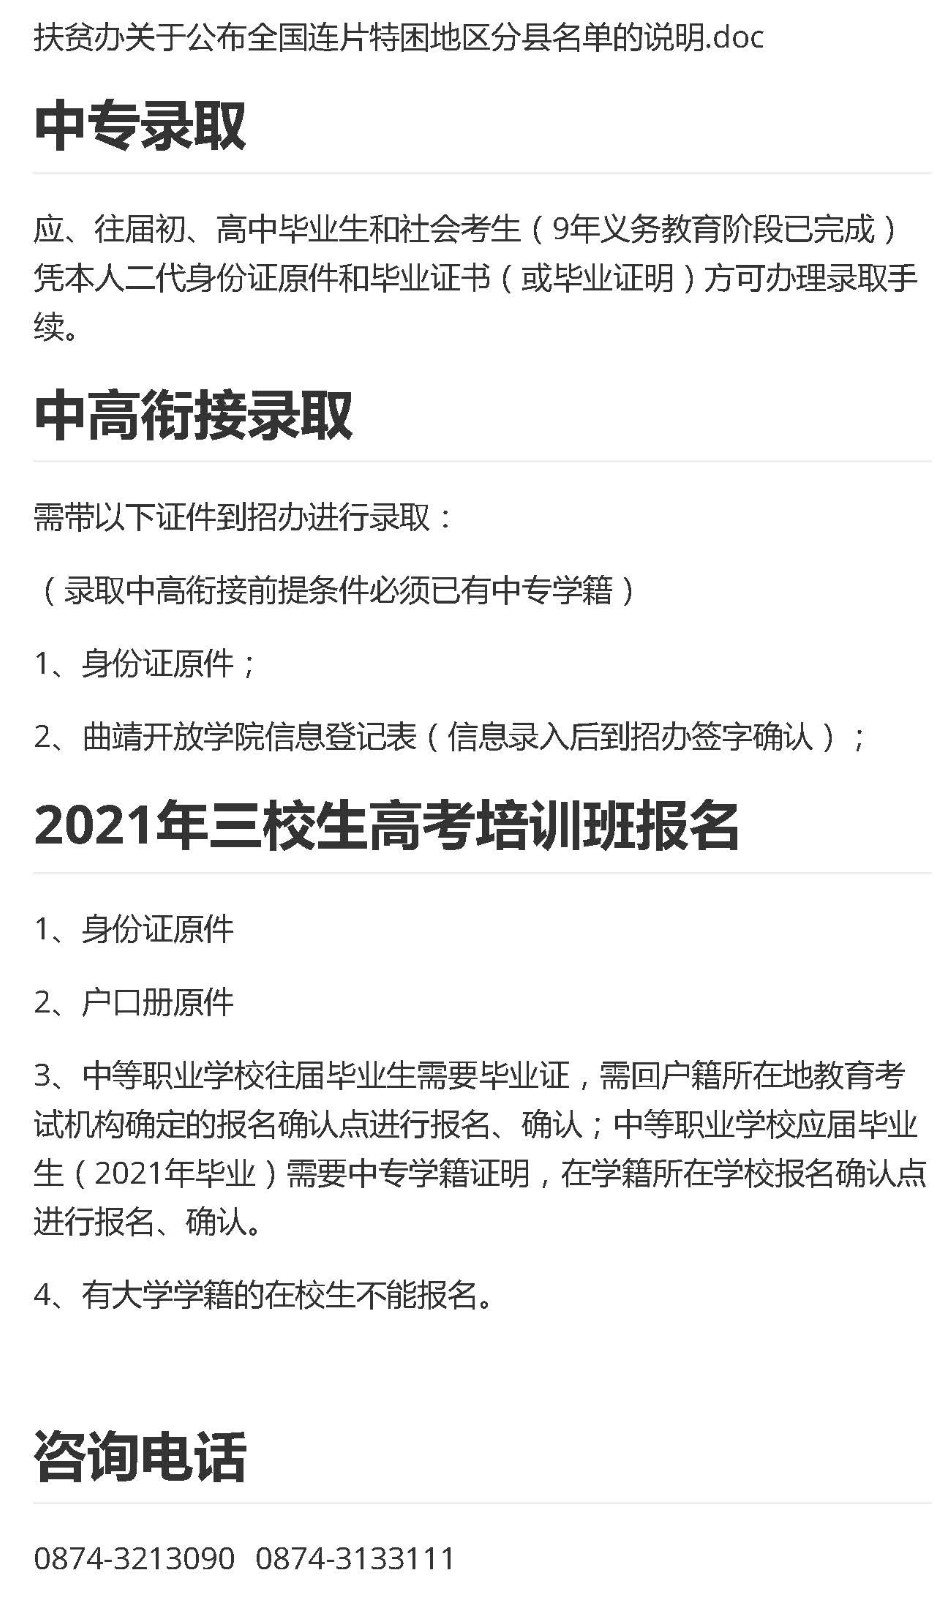 2020年学校官网-入学须知_页面_3.jpg